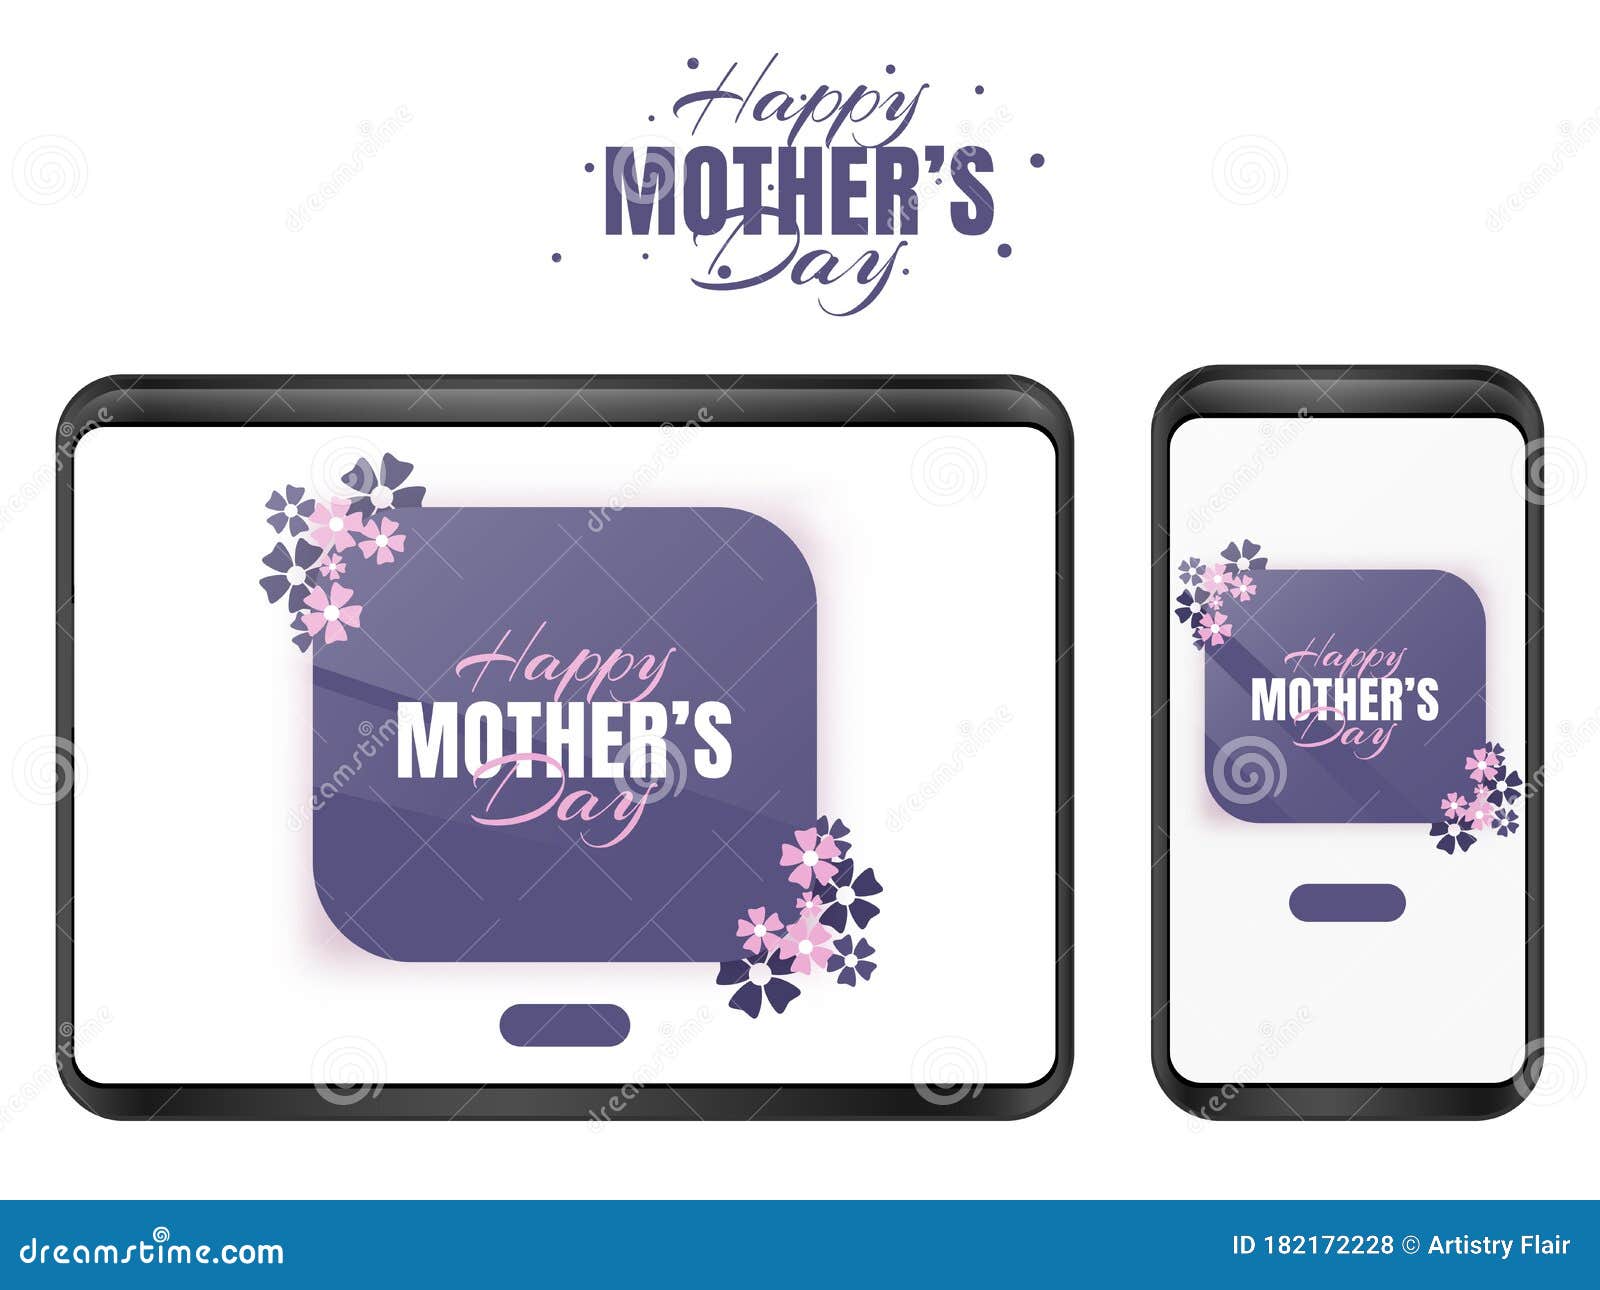 母亲节快乐 移动壁纸屏幕 Pc和笔记本电脑壁纸或网络设计概念 在母亲节中 都有美丽的向量例证 插画包括有高雅 女性